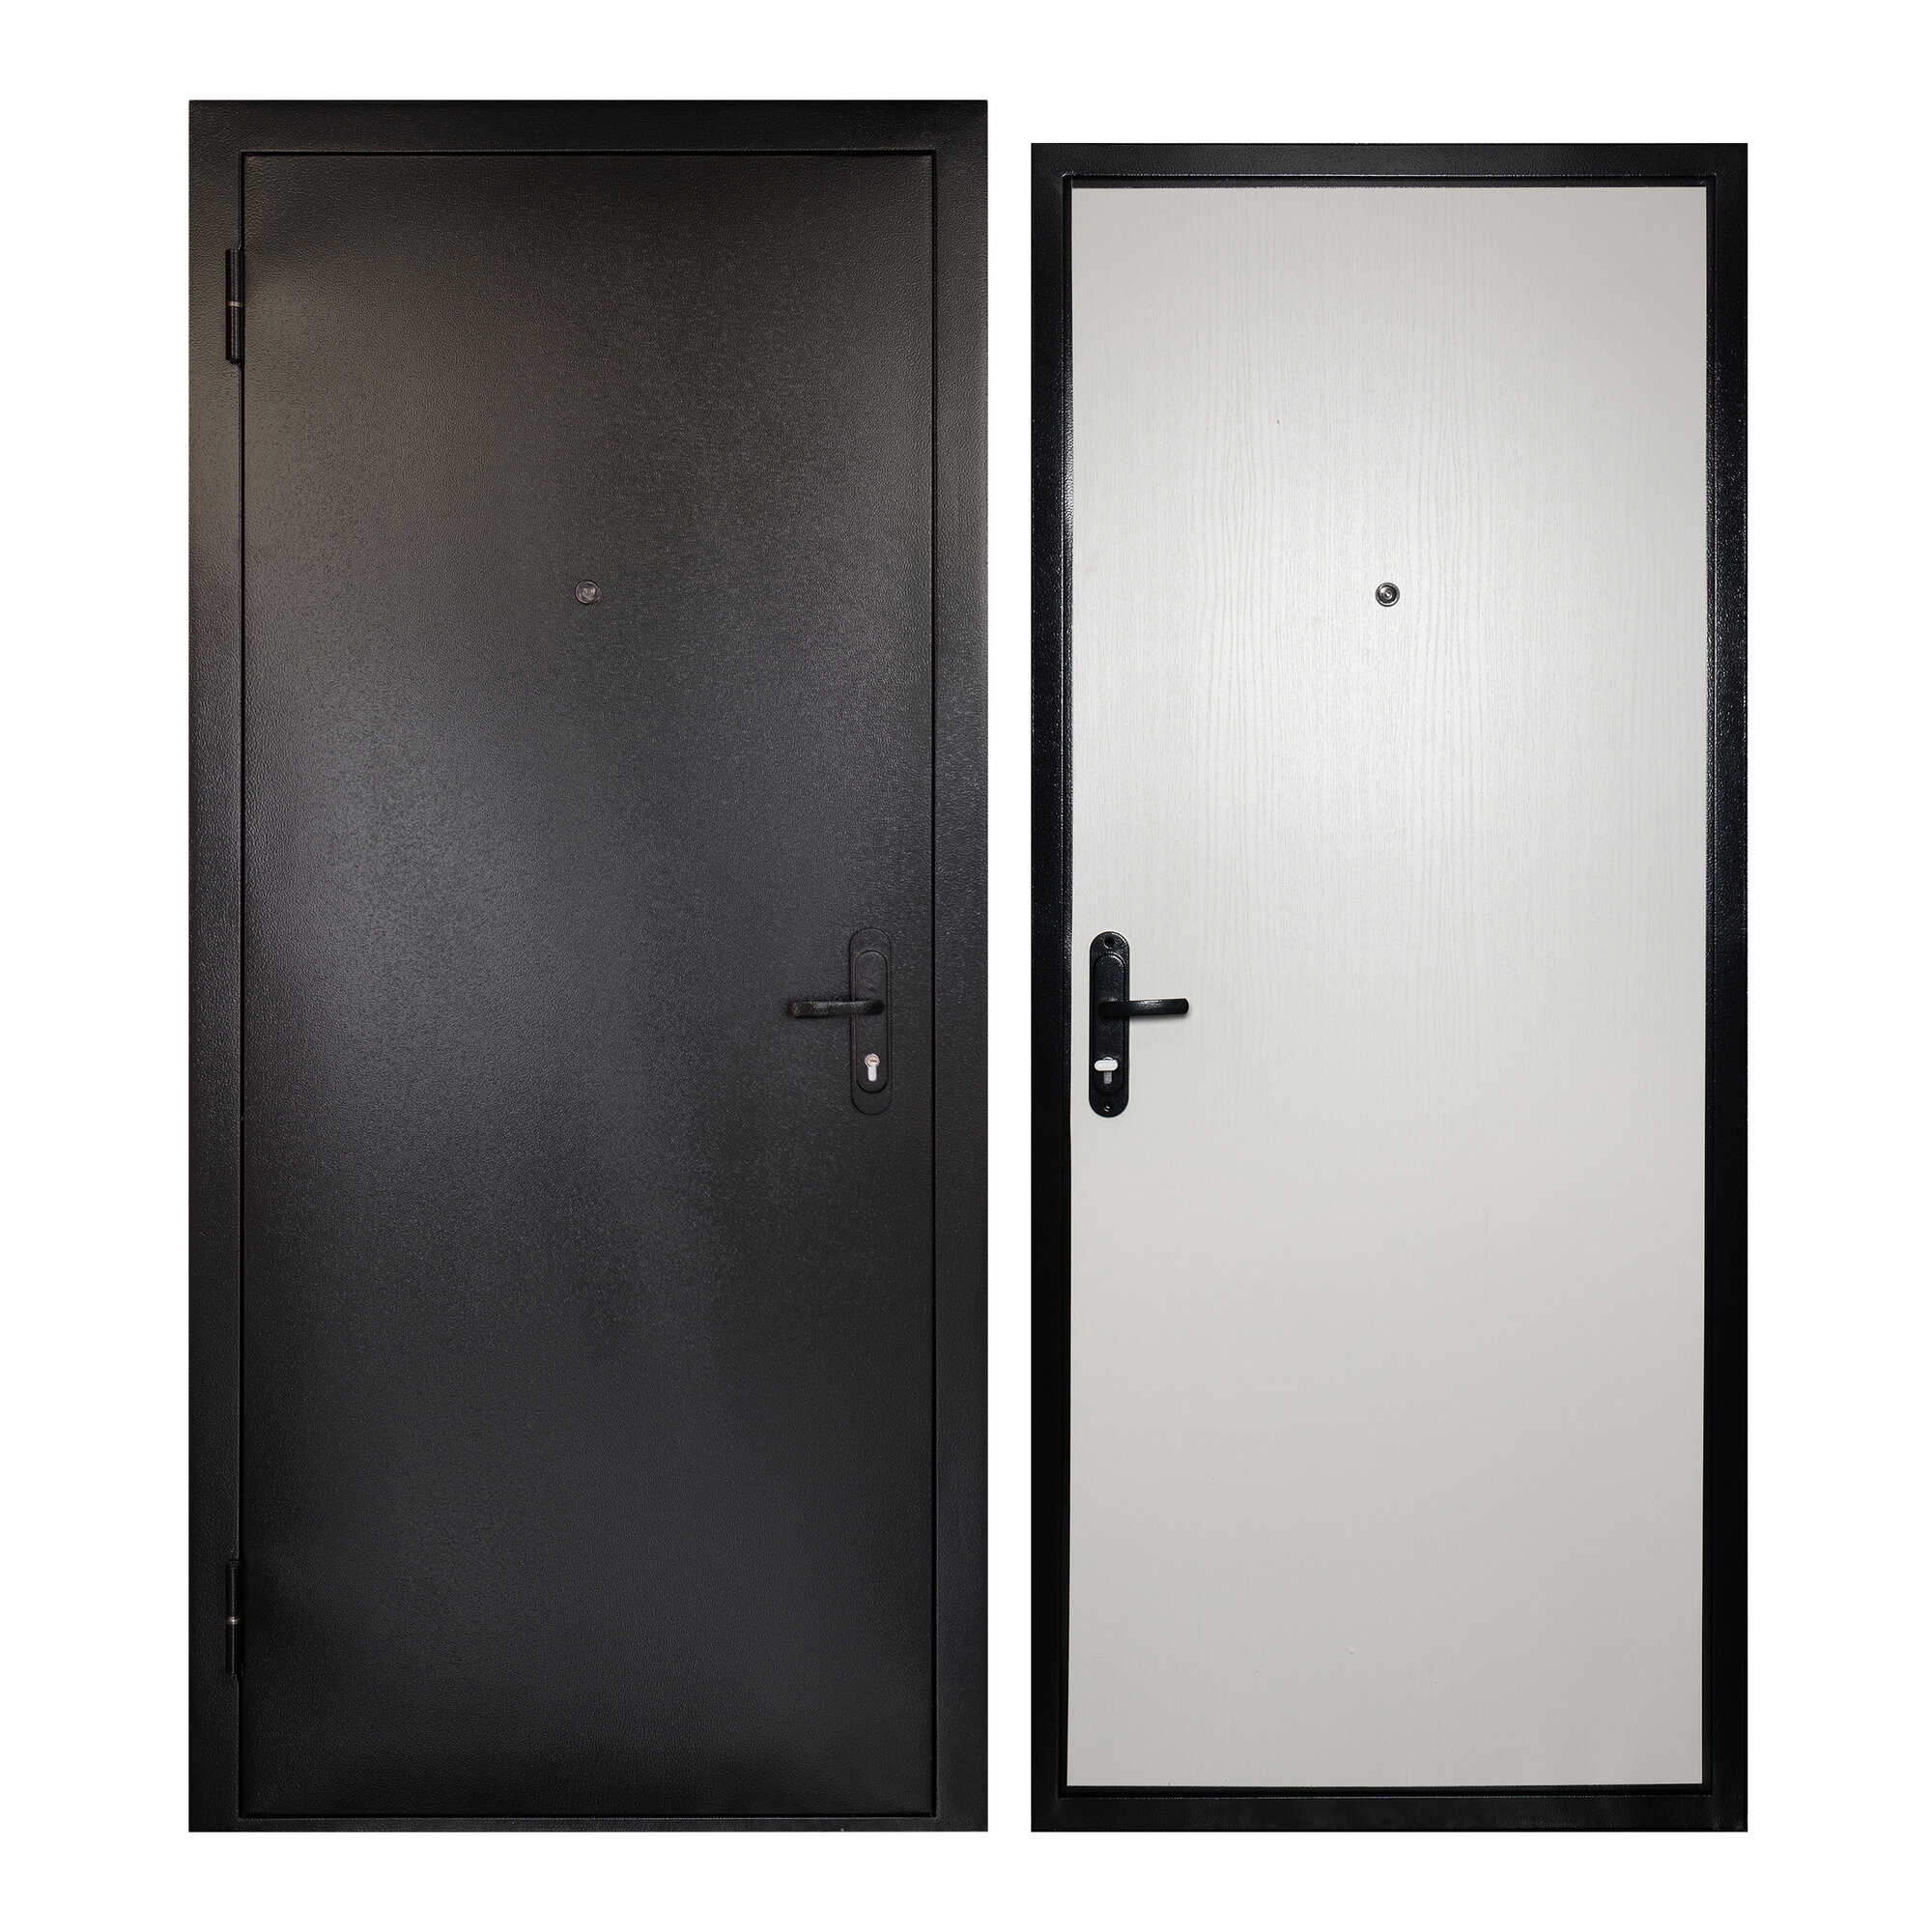 Дверь входная для квартиры Unicorn металлическая Terminal 860х2050, левая, антивандальное покрытие, уплотнитель, цилиндровый замок, серый/белый